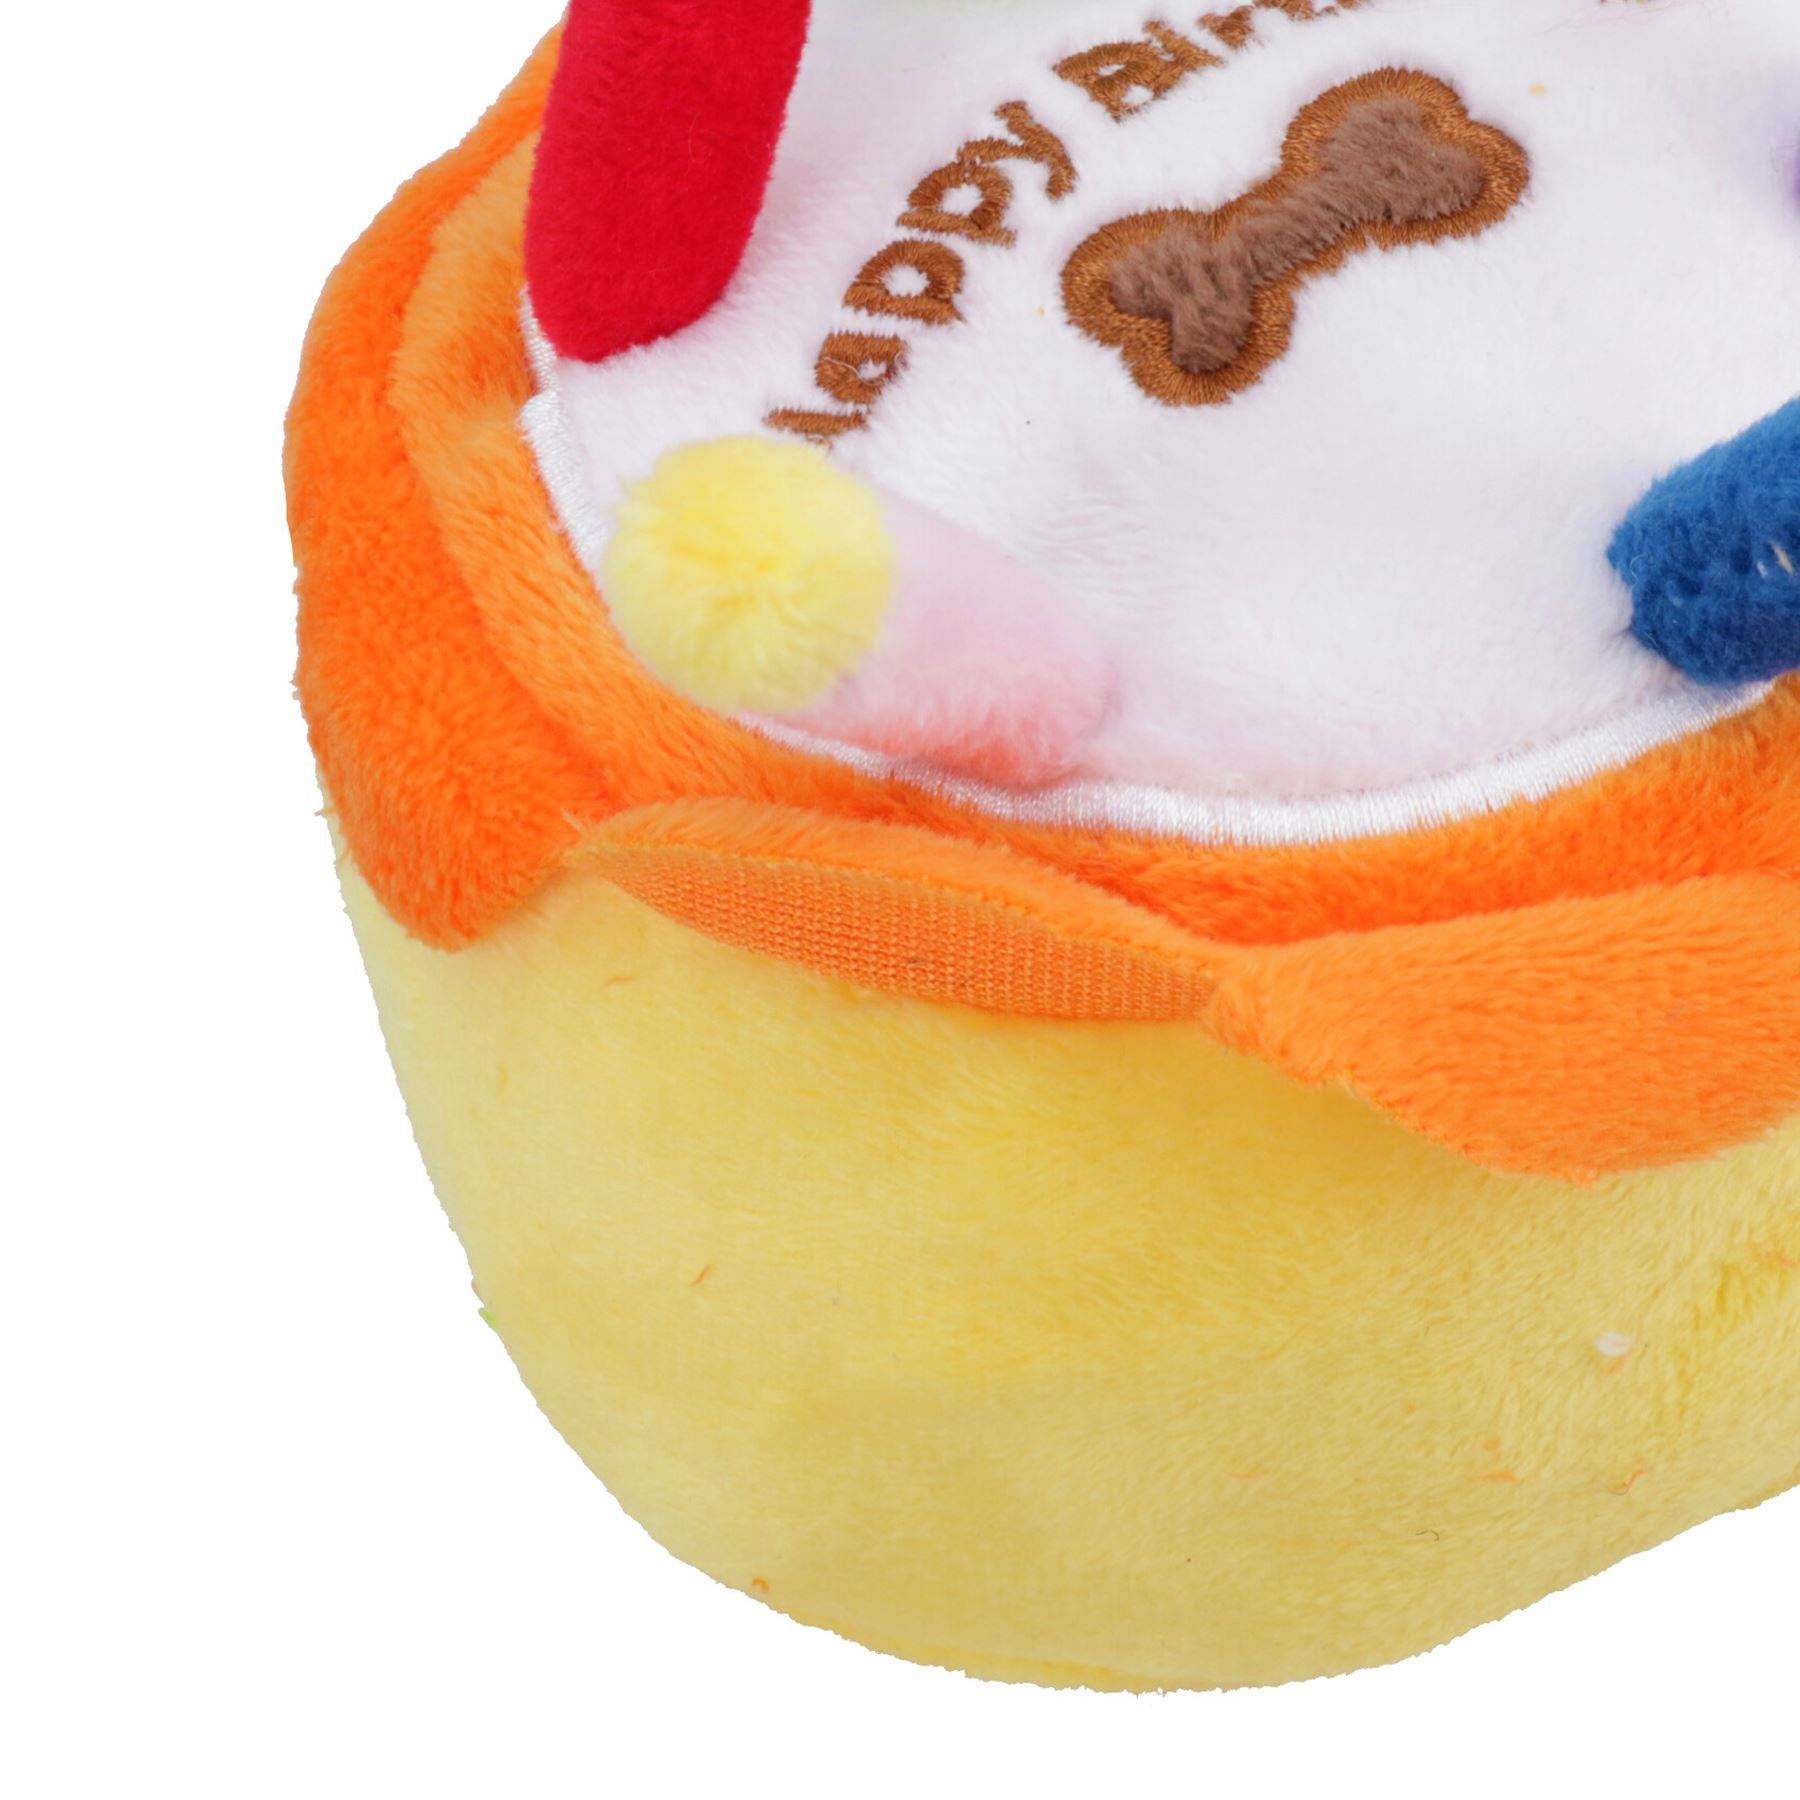 Super Soft Plush Squeaky Small Birthday Cake Toy Dog Puppy Happy Birthday Gift